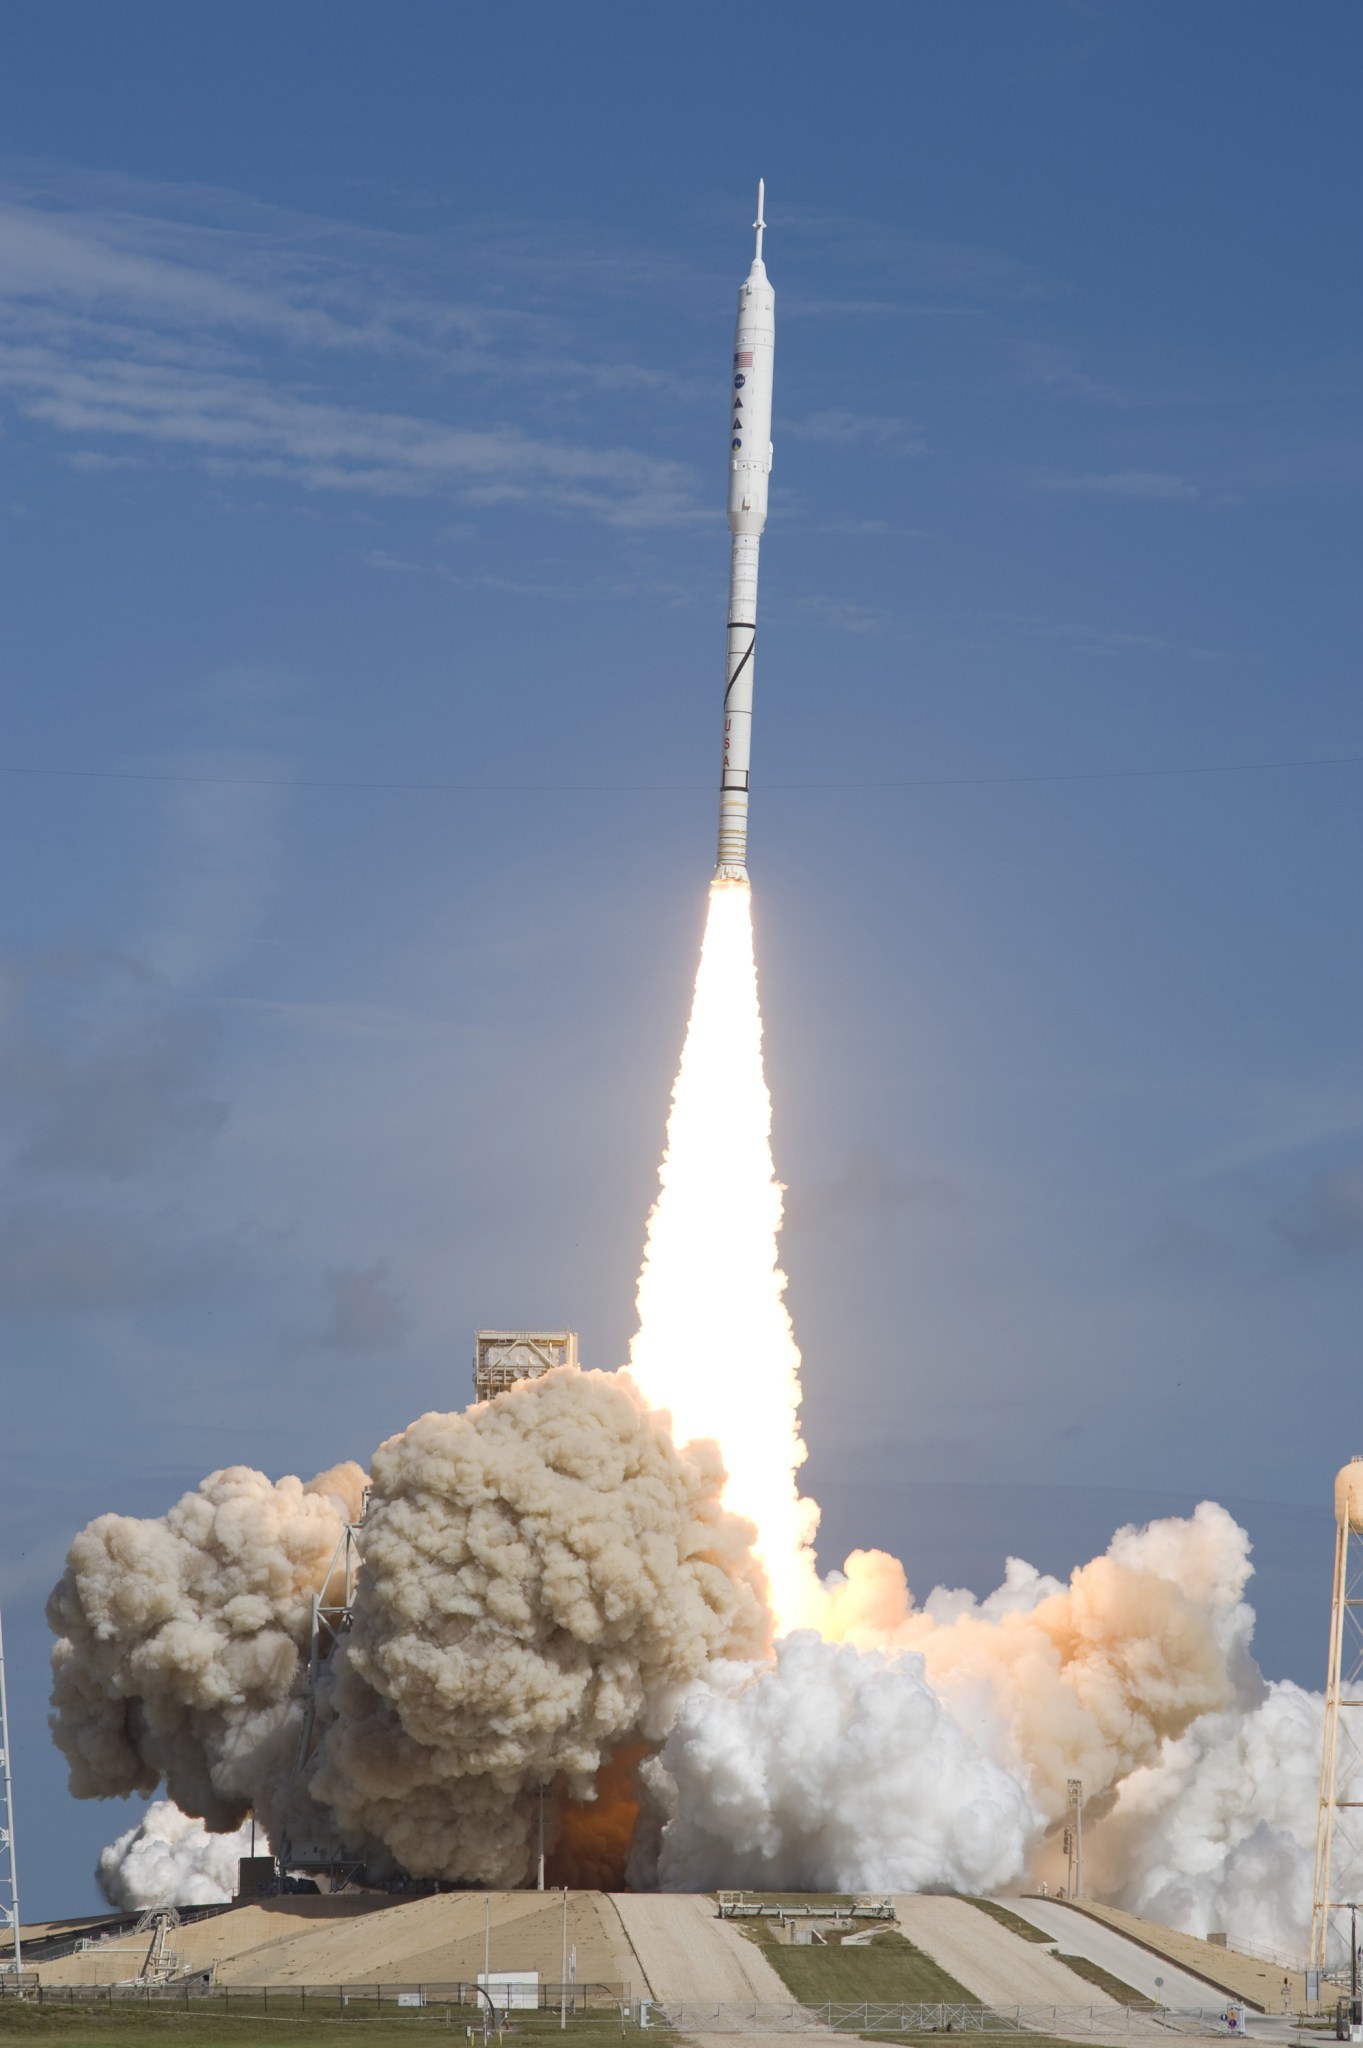  Ares I-X prototype launch